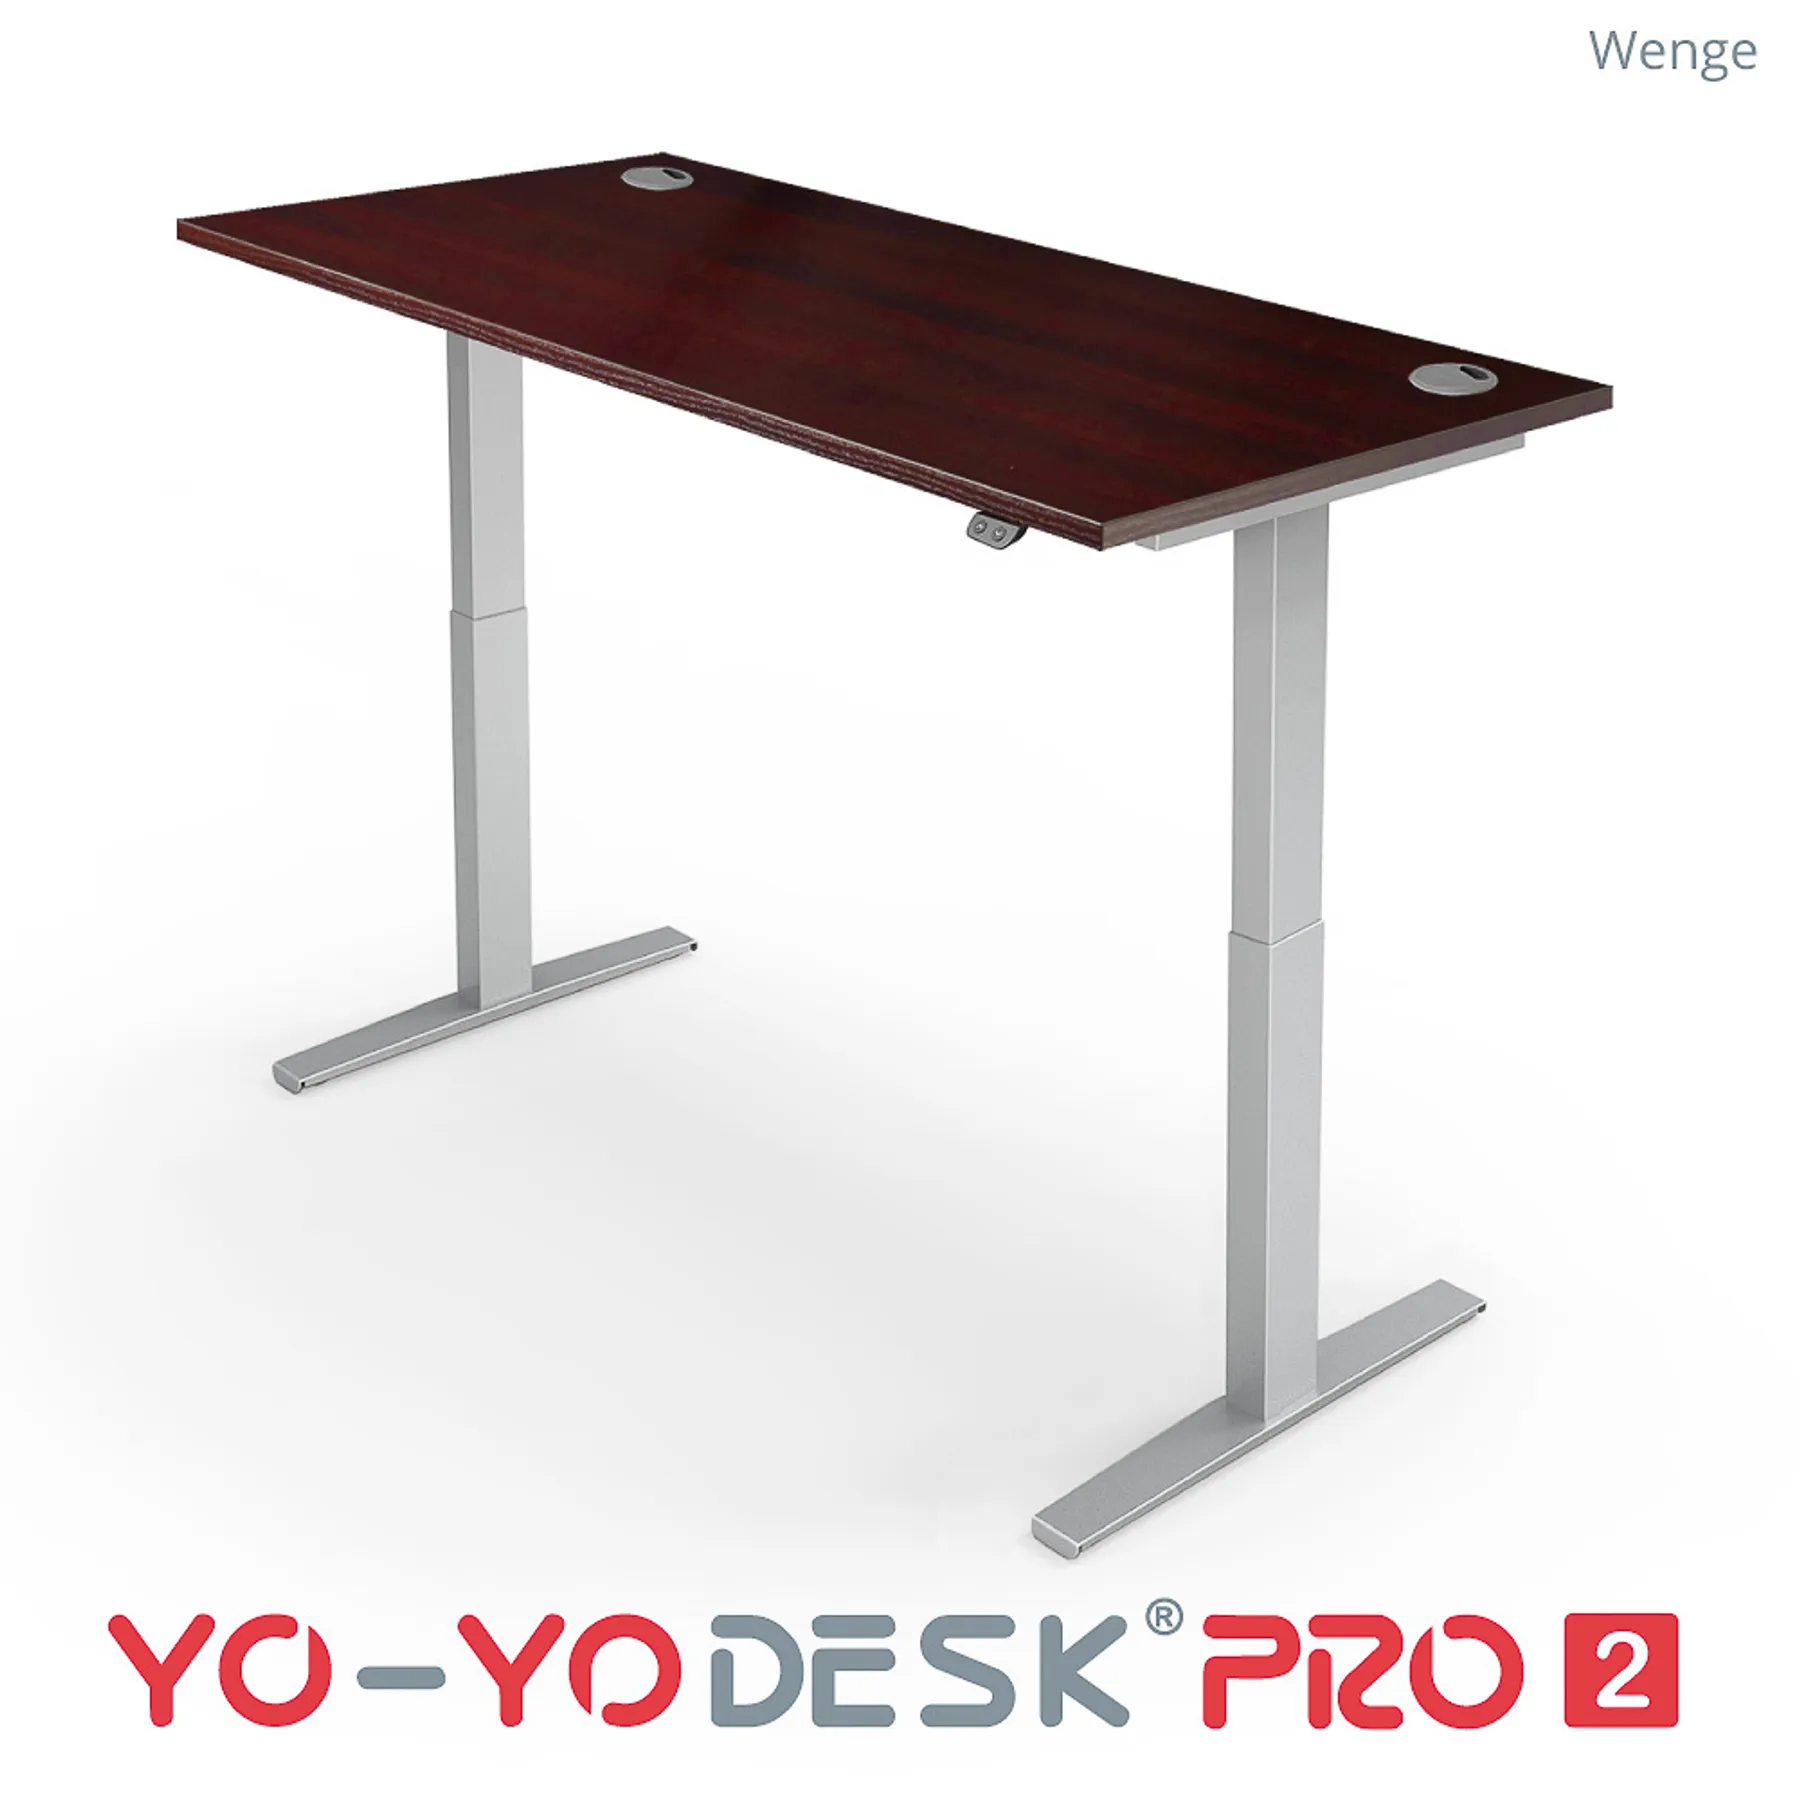 Lof direct yoyo desk pro 2 Chrome frame Wenge